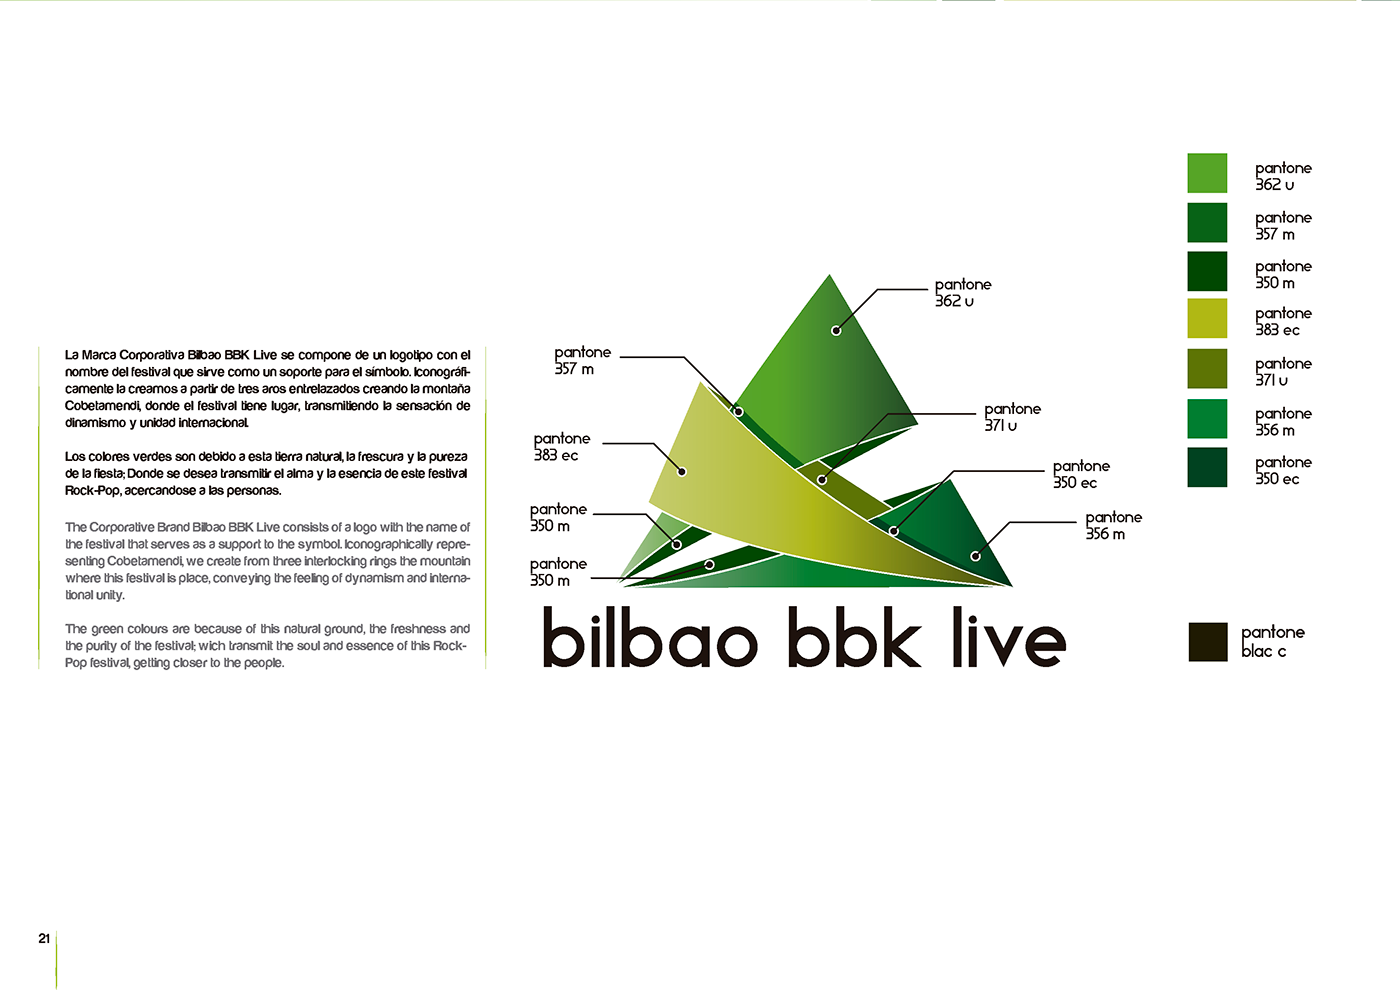 Bilbao BBk live logo identidad